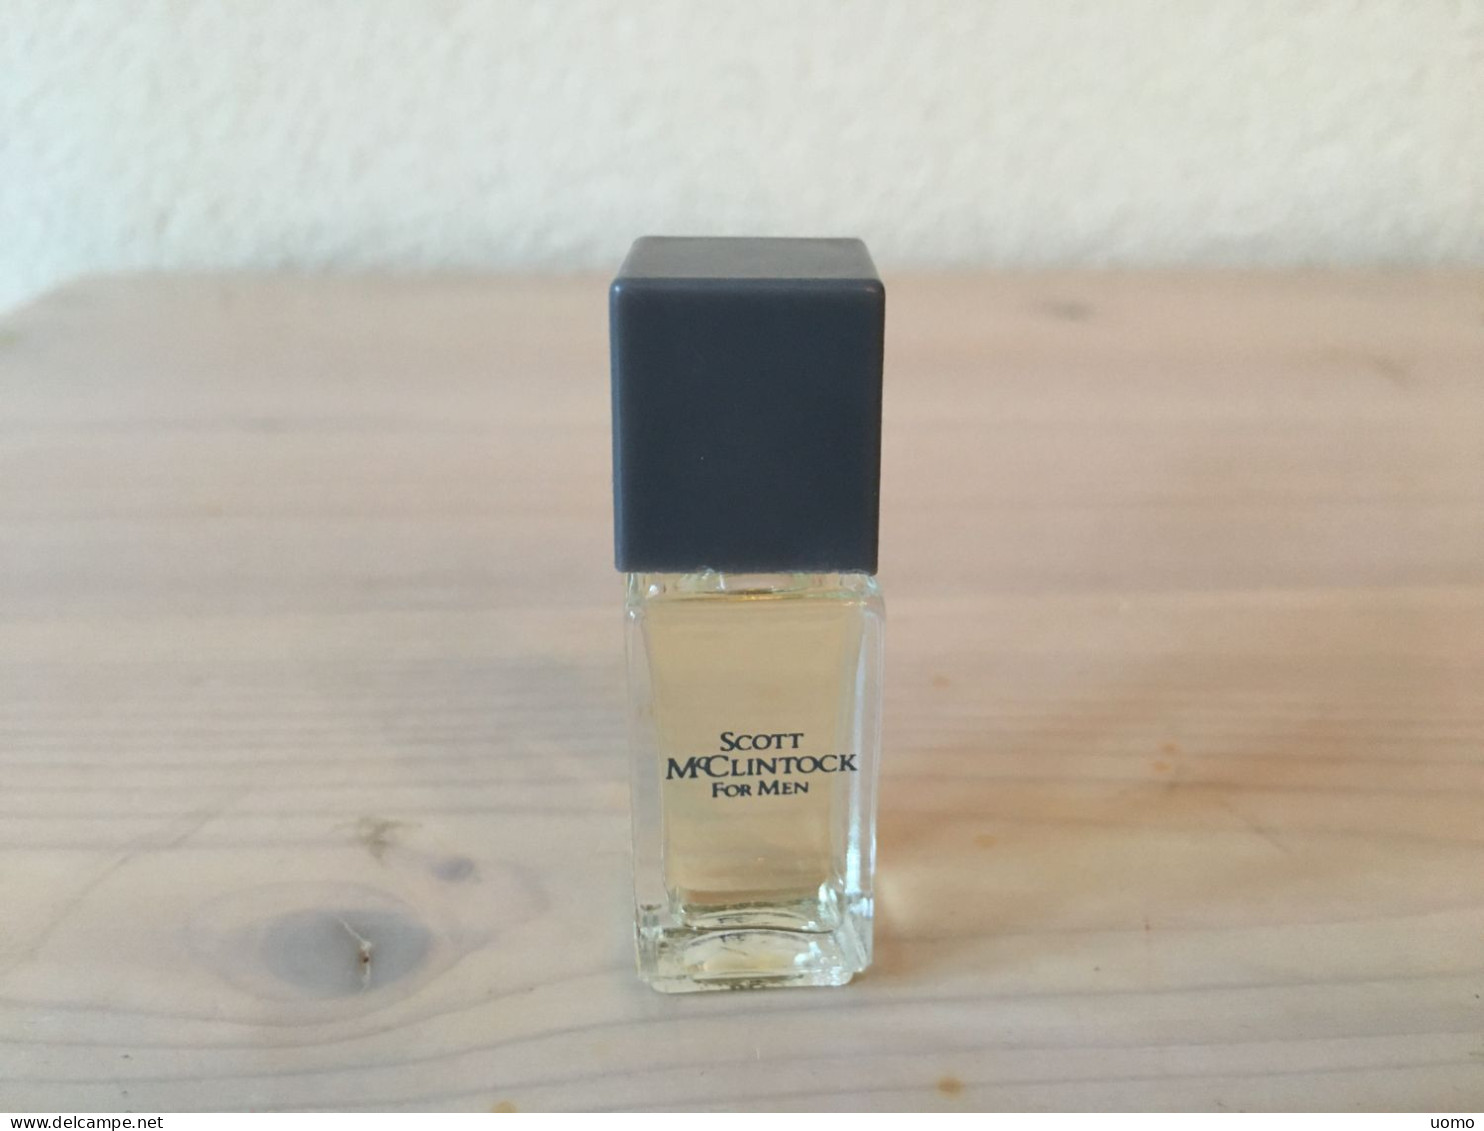 Scott McClintock For Men Cologne 4 Ml (Jessica McClintock) - Miniatures Men's Fragrances (without Box)